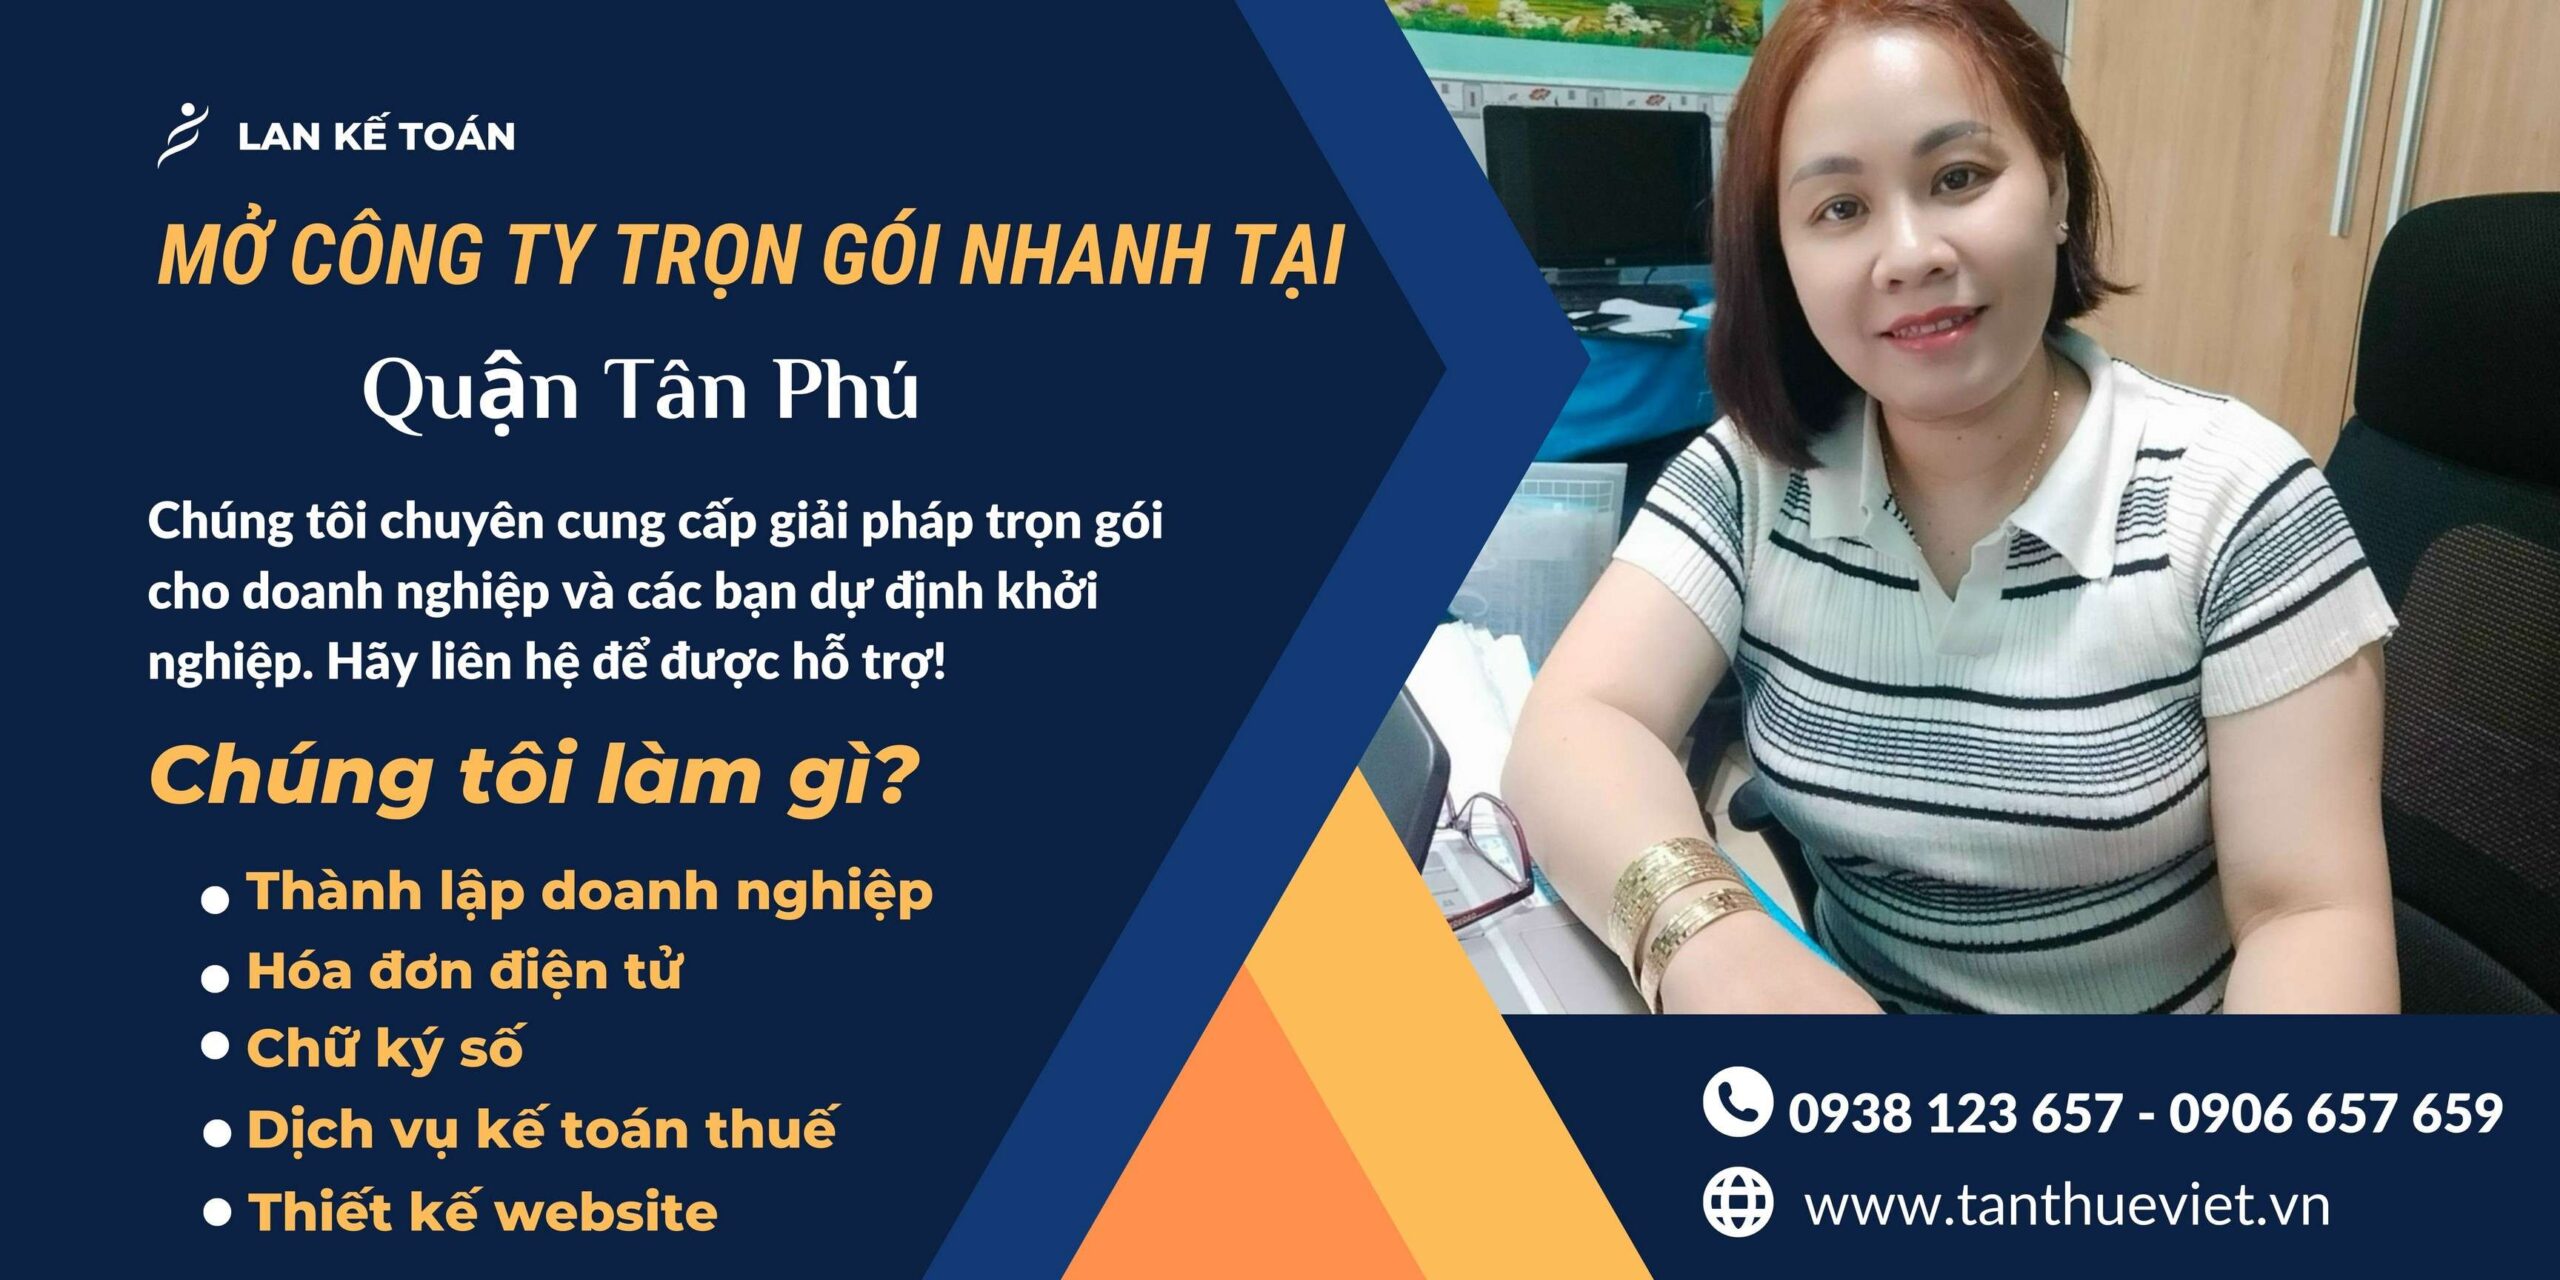 Dịch vụ thành lập công ty doanh nghiệp Quận Tân Phú Nhanh, Trọn Gói